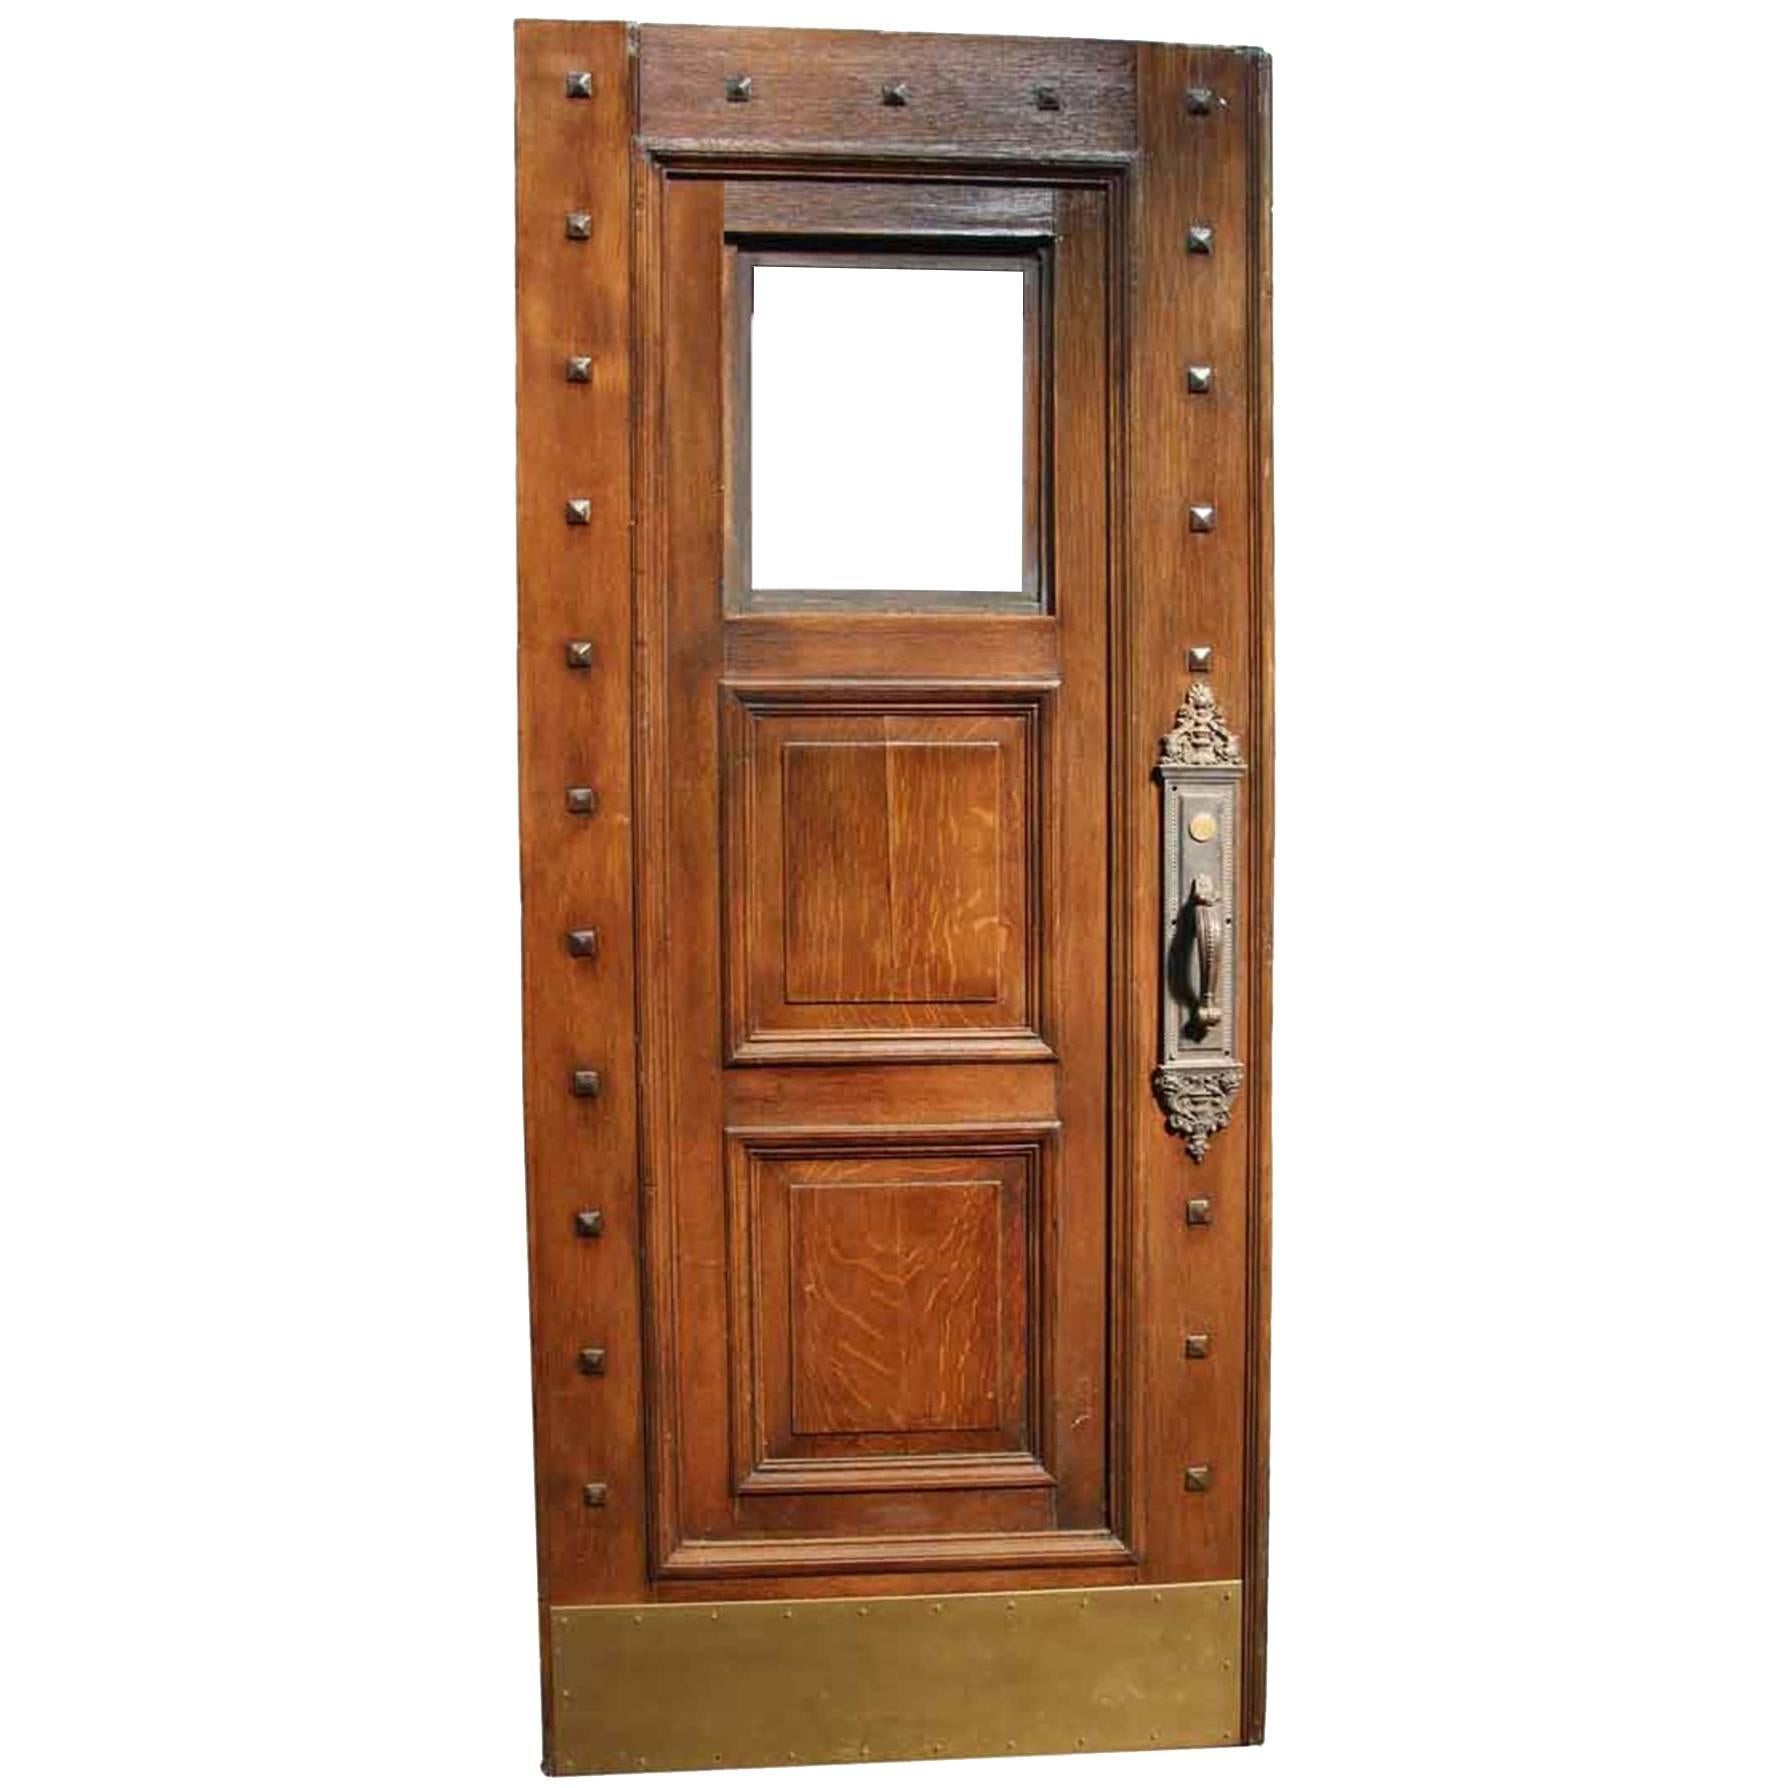 1880s Victorian Studded Wood Door with Window and Original Bronze Hardware